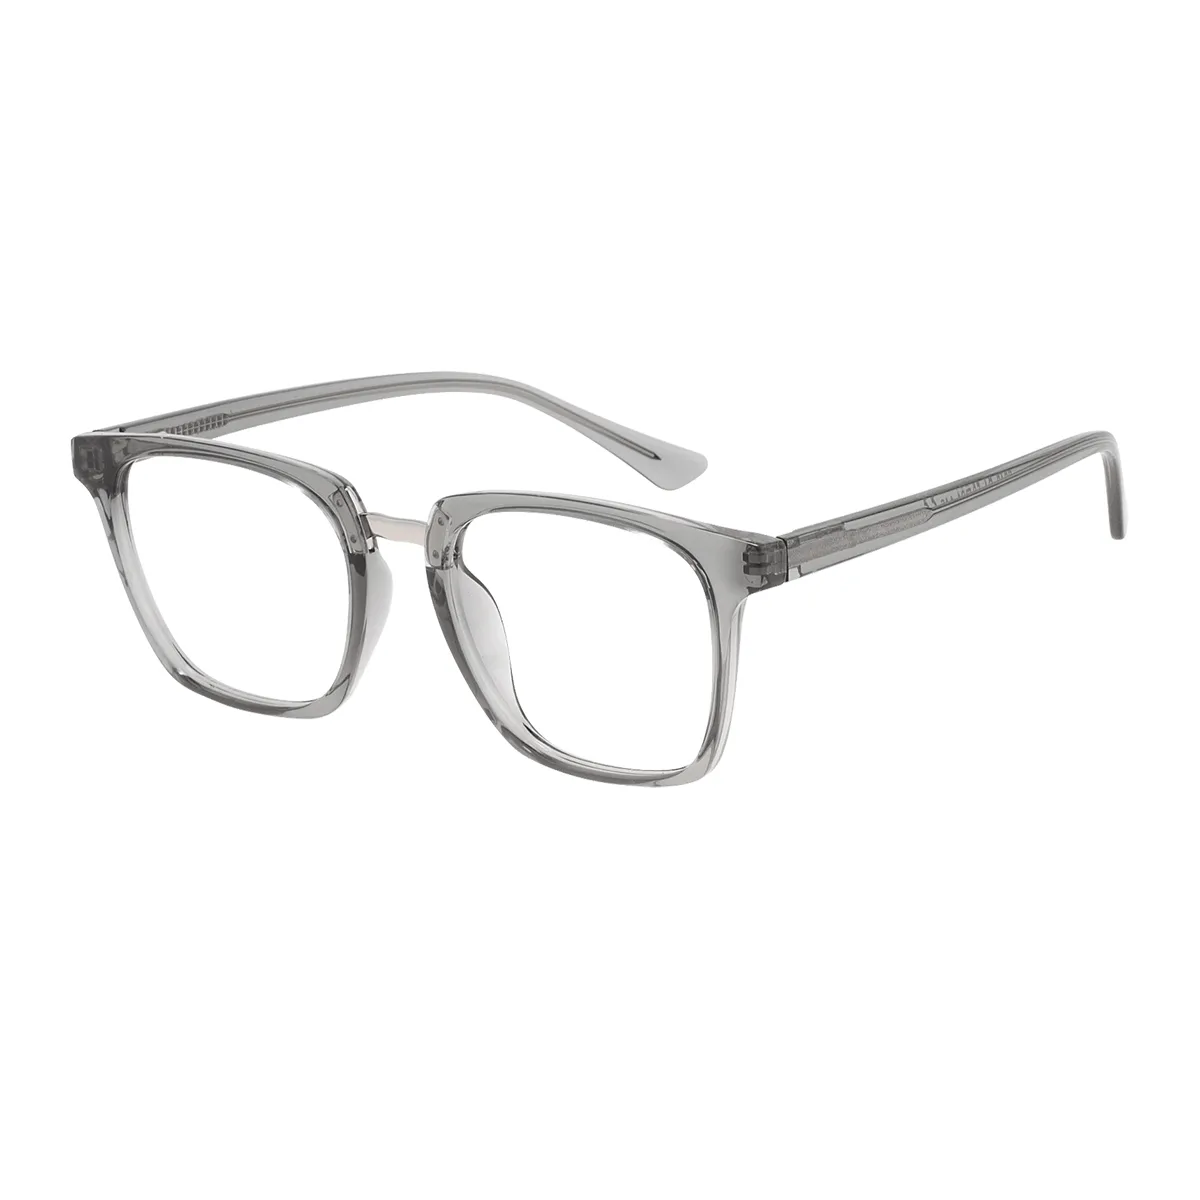 Rainey - Square Gray Glasses for Men & Women